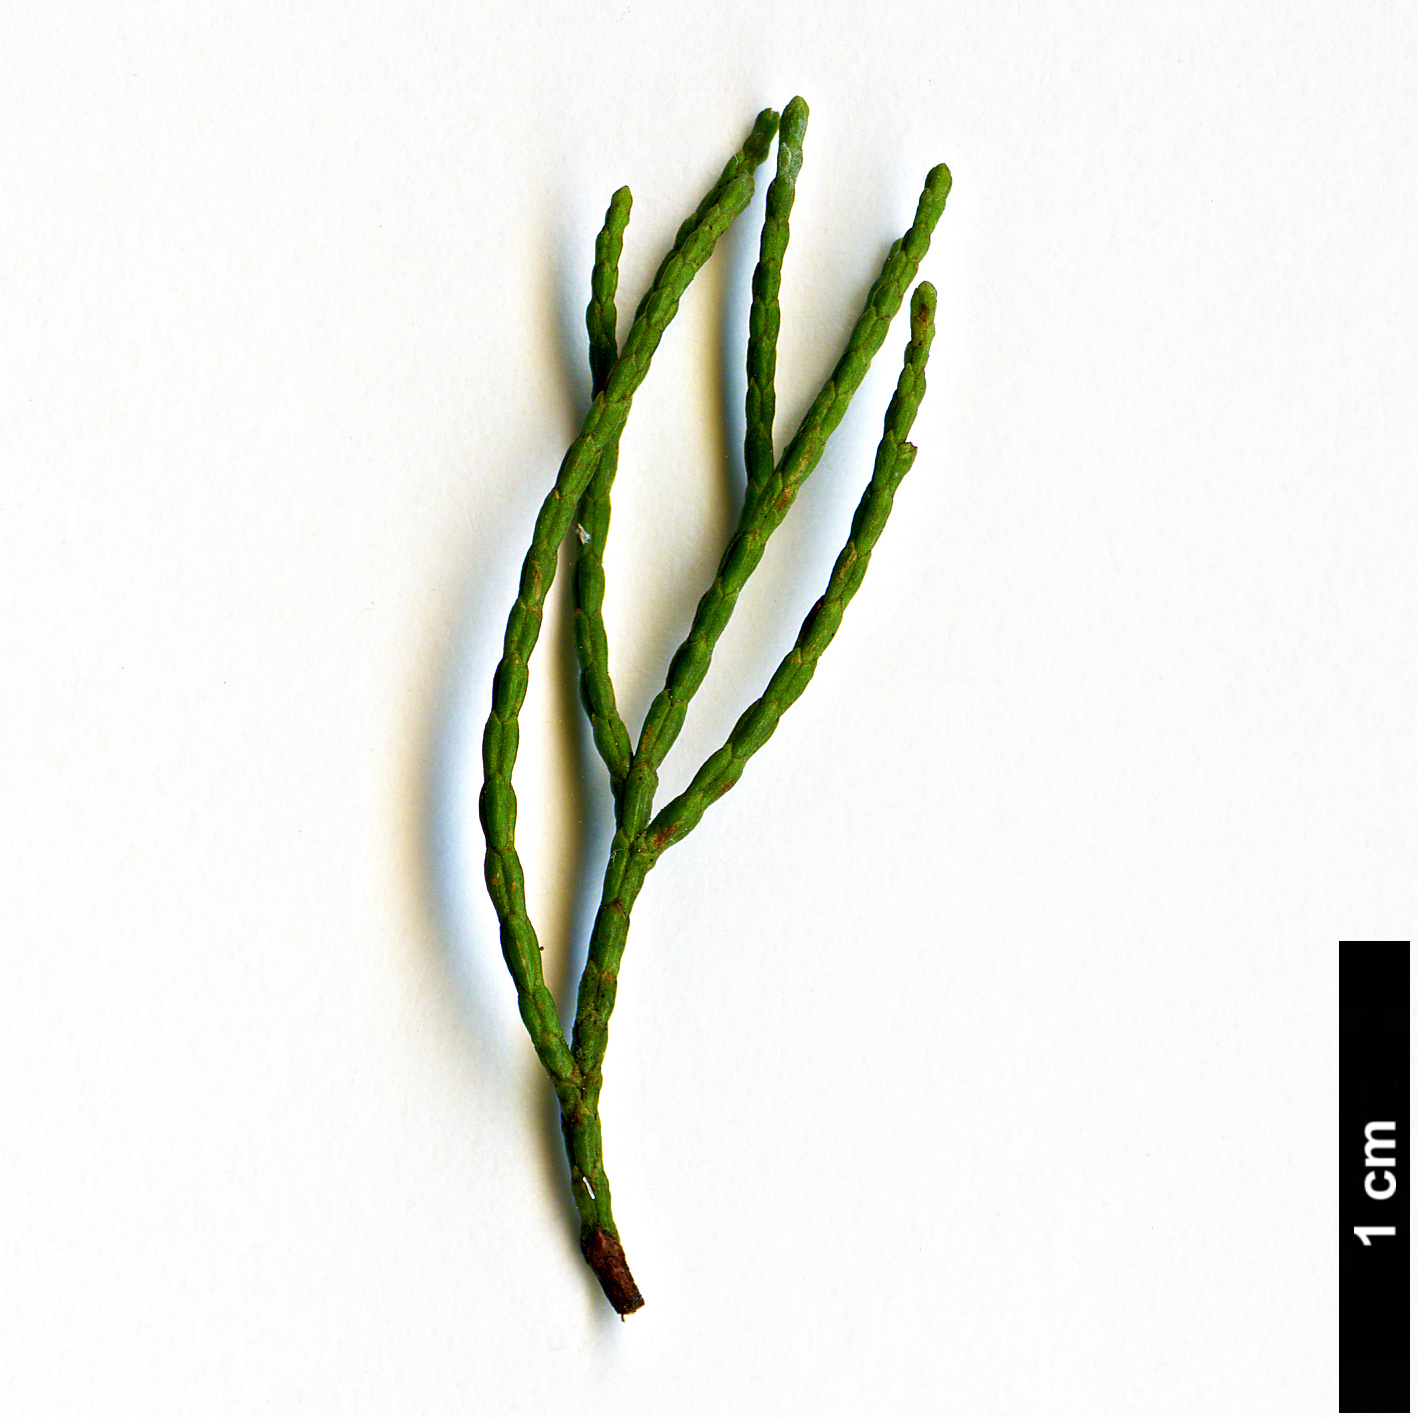 High resolution image: Family: Cupressaceae - Genus: Callitris - Taxon: columellaris